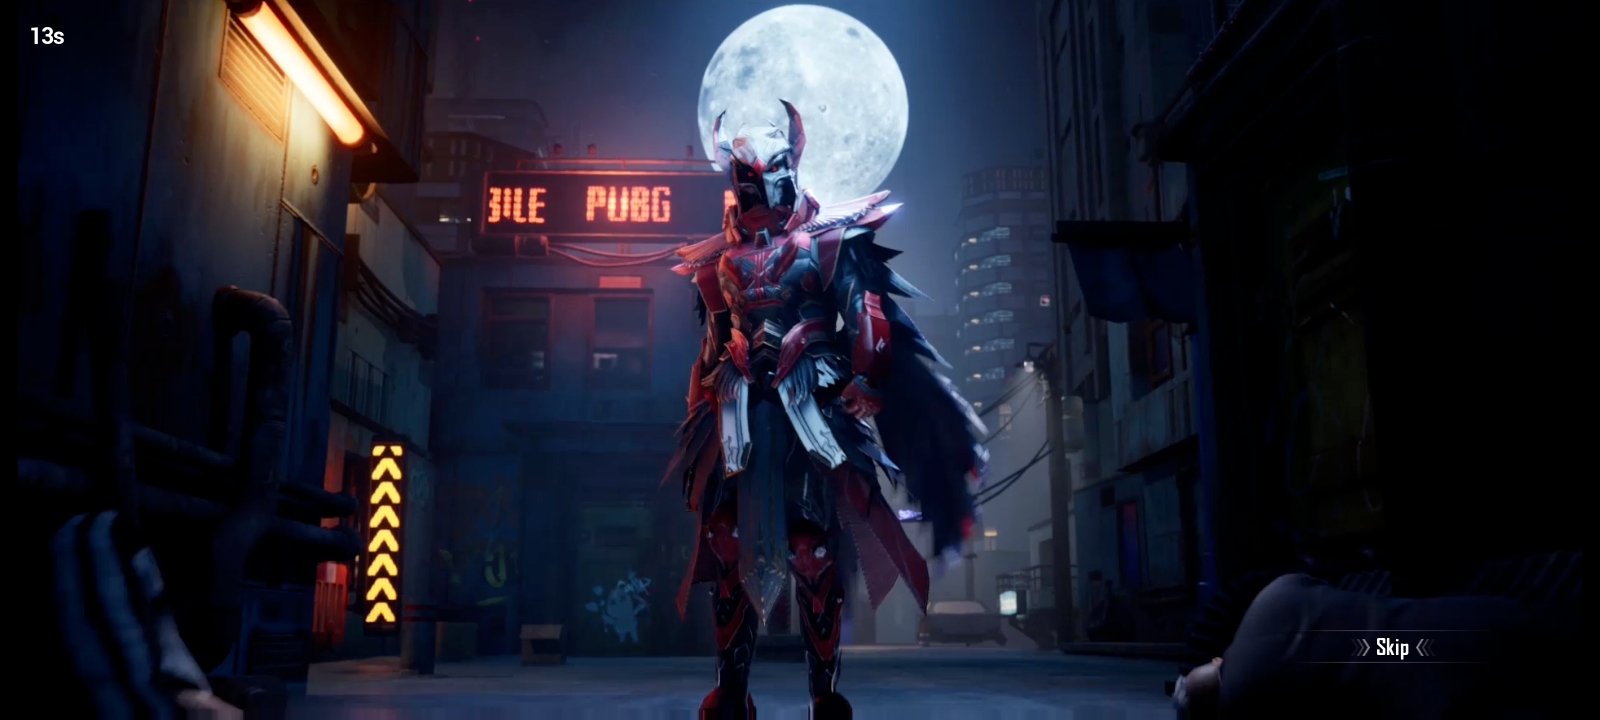 PUBG Mobiles 6 Level Blood Raven X Suit Appearance   Esports